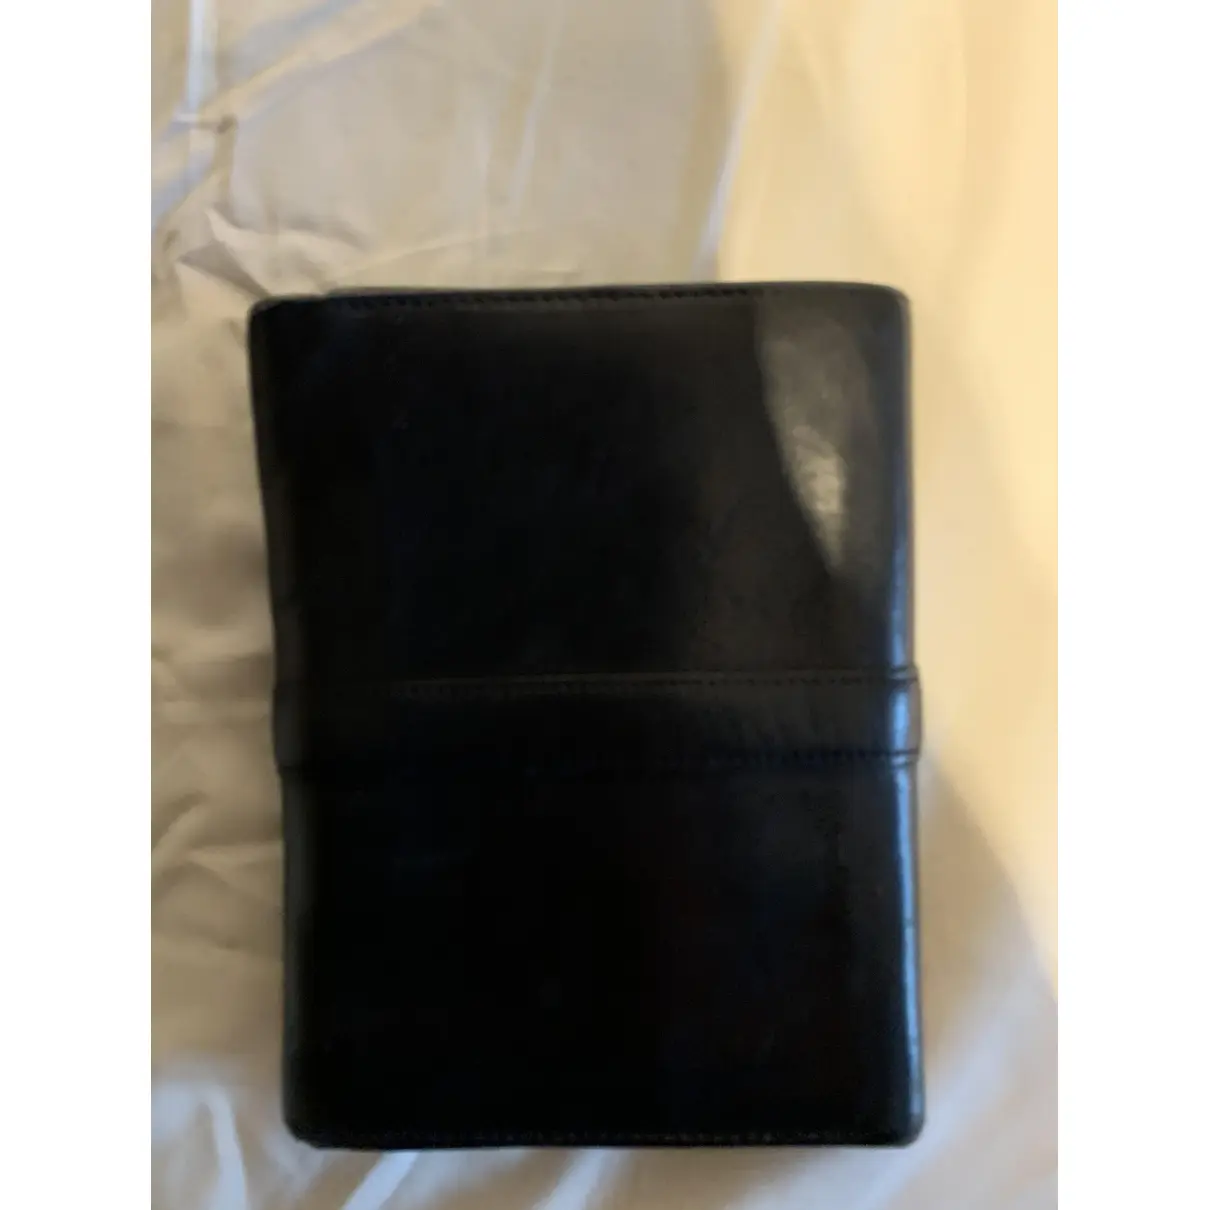 Buy Versace Leather wallet online